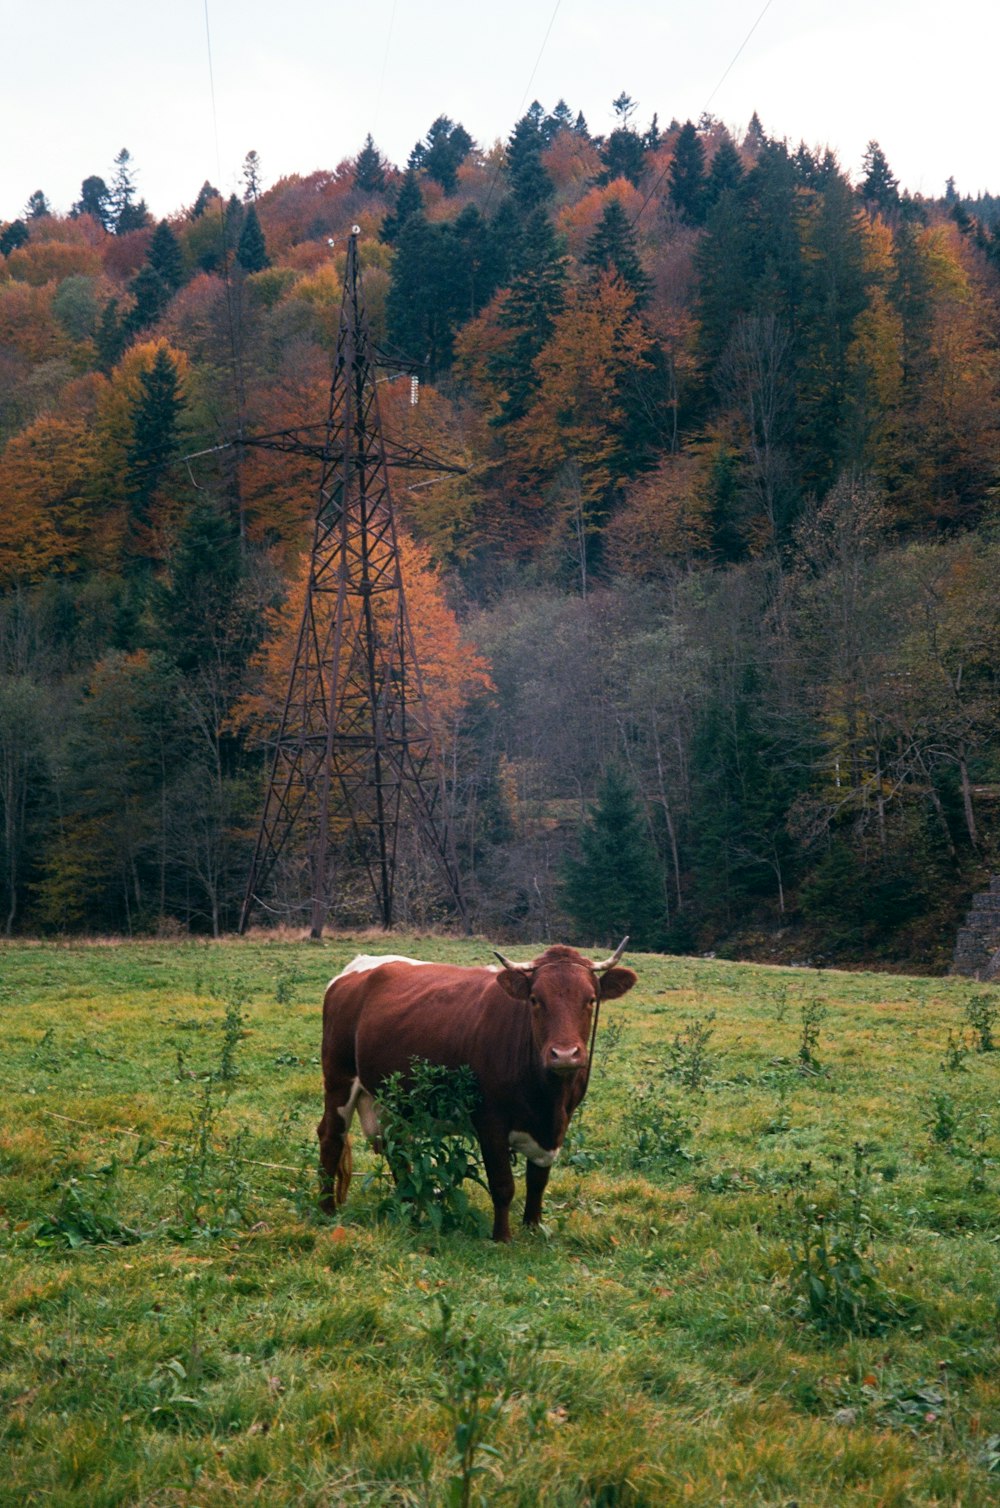 무성한 녹색 들판 위에 서있는 갈색 소